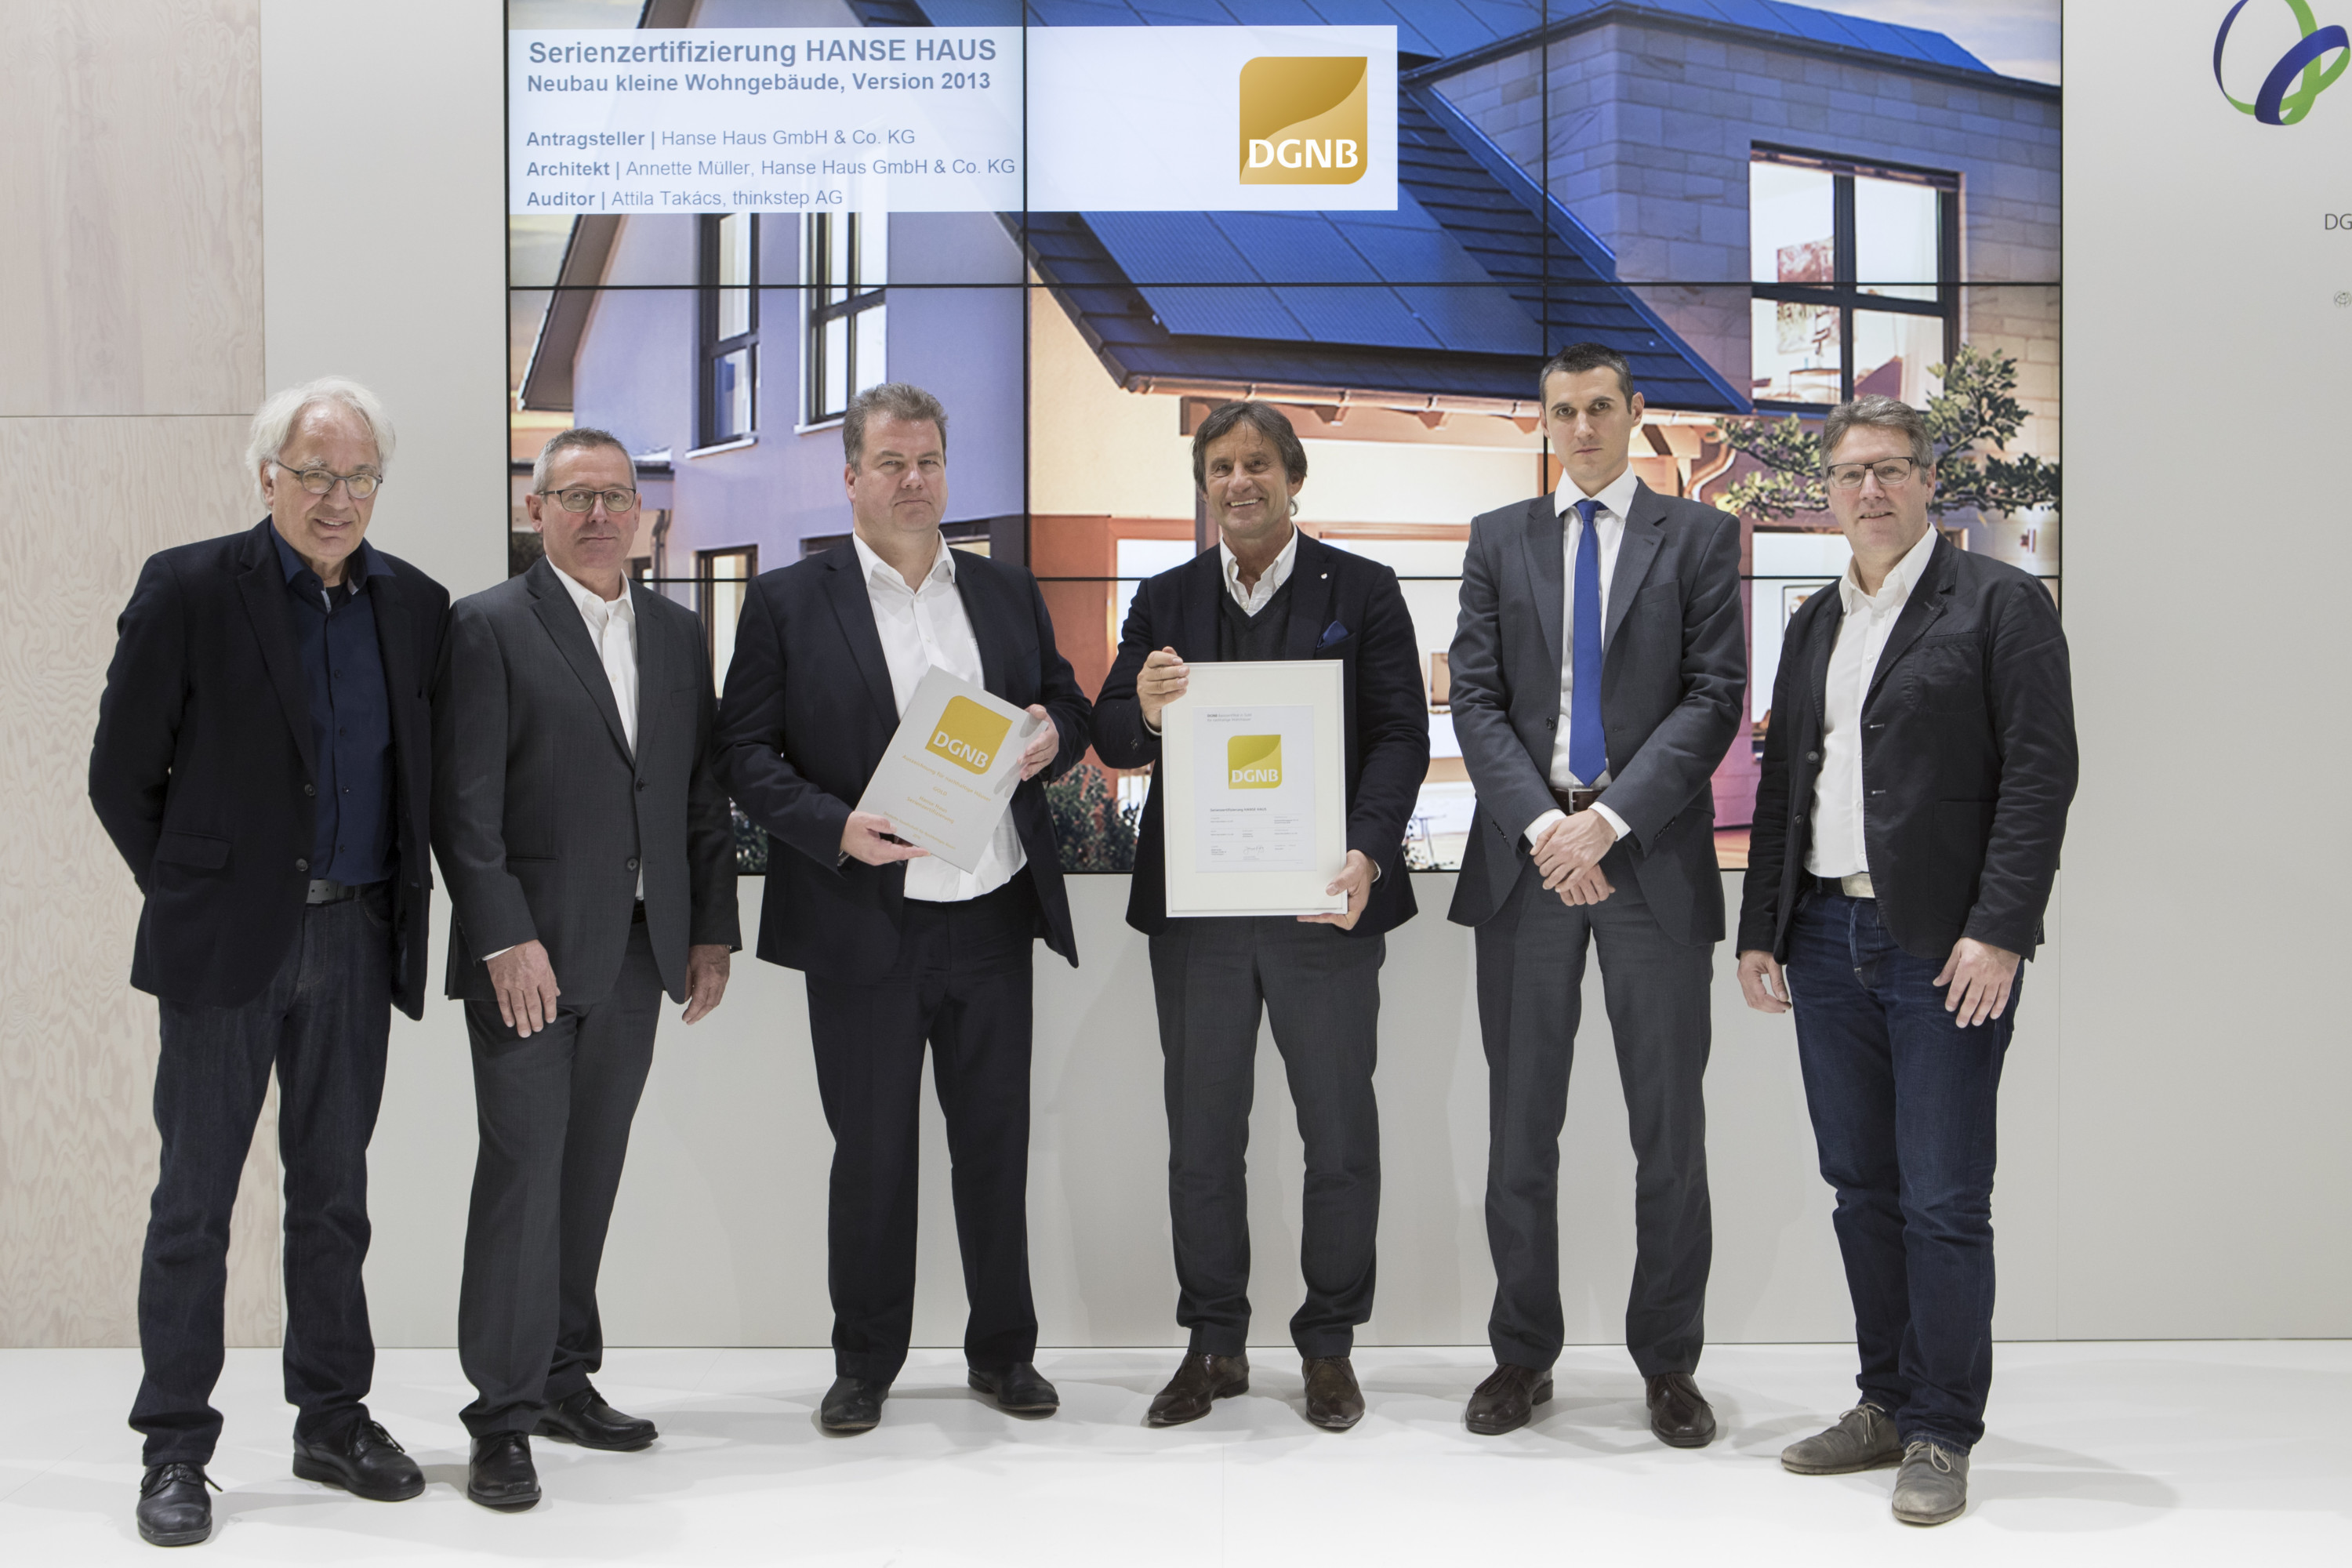 Das DGNB Zertifikat in Gold ging an die Serienzertifizierung HANSE HAUS, überreicht von Prof. Alexander Rudolphi (DGNB Präsident) und Johannes Kreißig (Geschäftsführer DGNB GmbH)